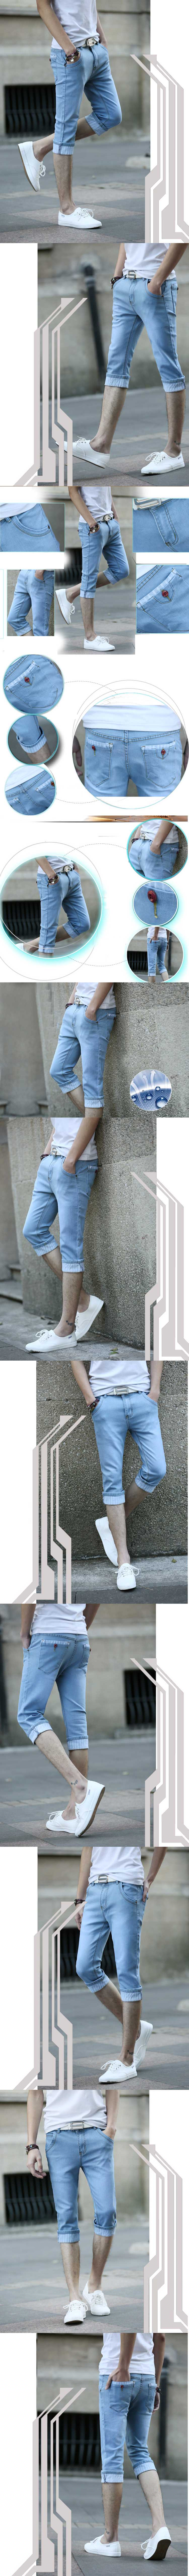 cari celana jeans pria model 3/4? klik dan pesan online sekaran. model celana jeans terbaru dengan koleksi terlengkap di pfp store